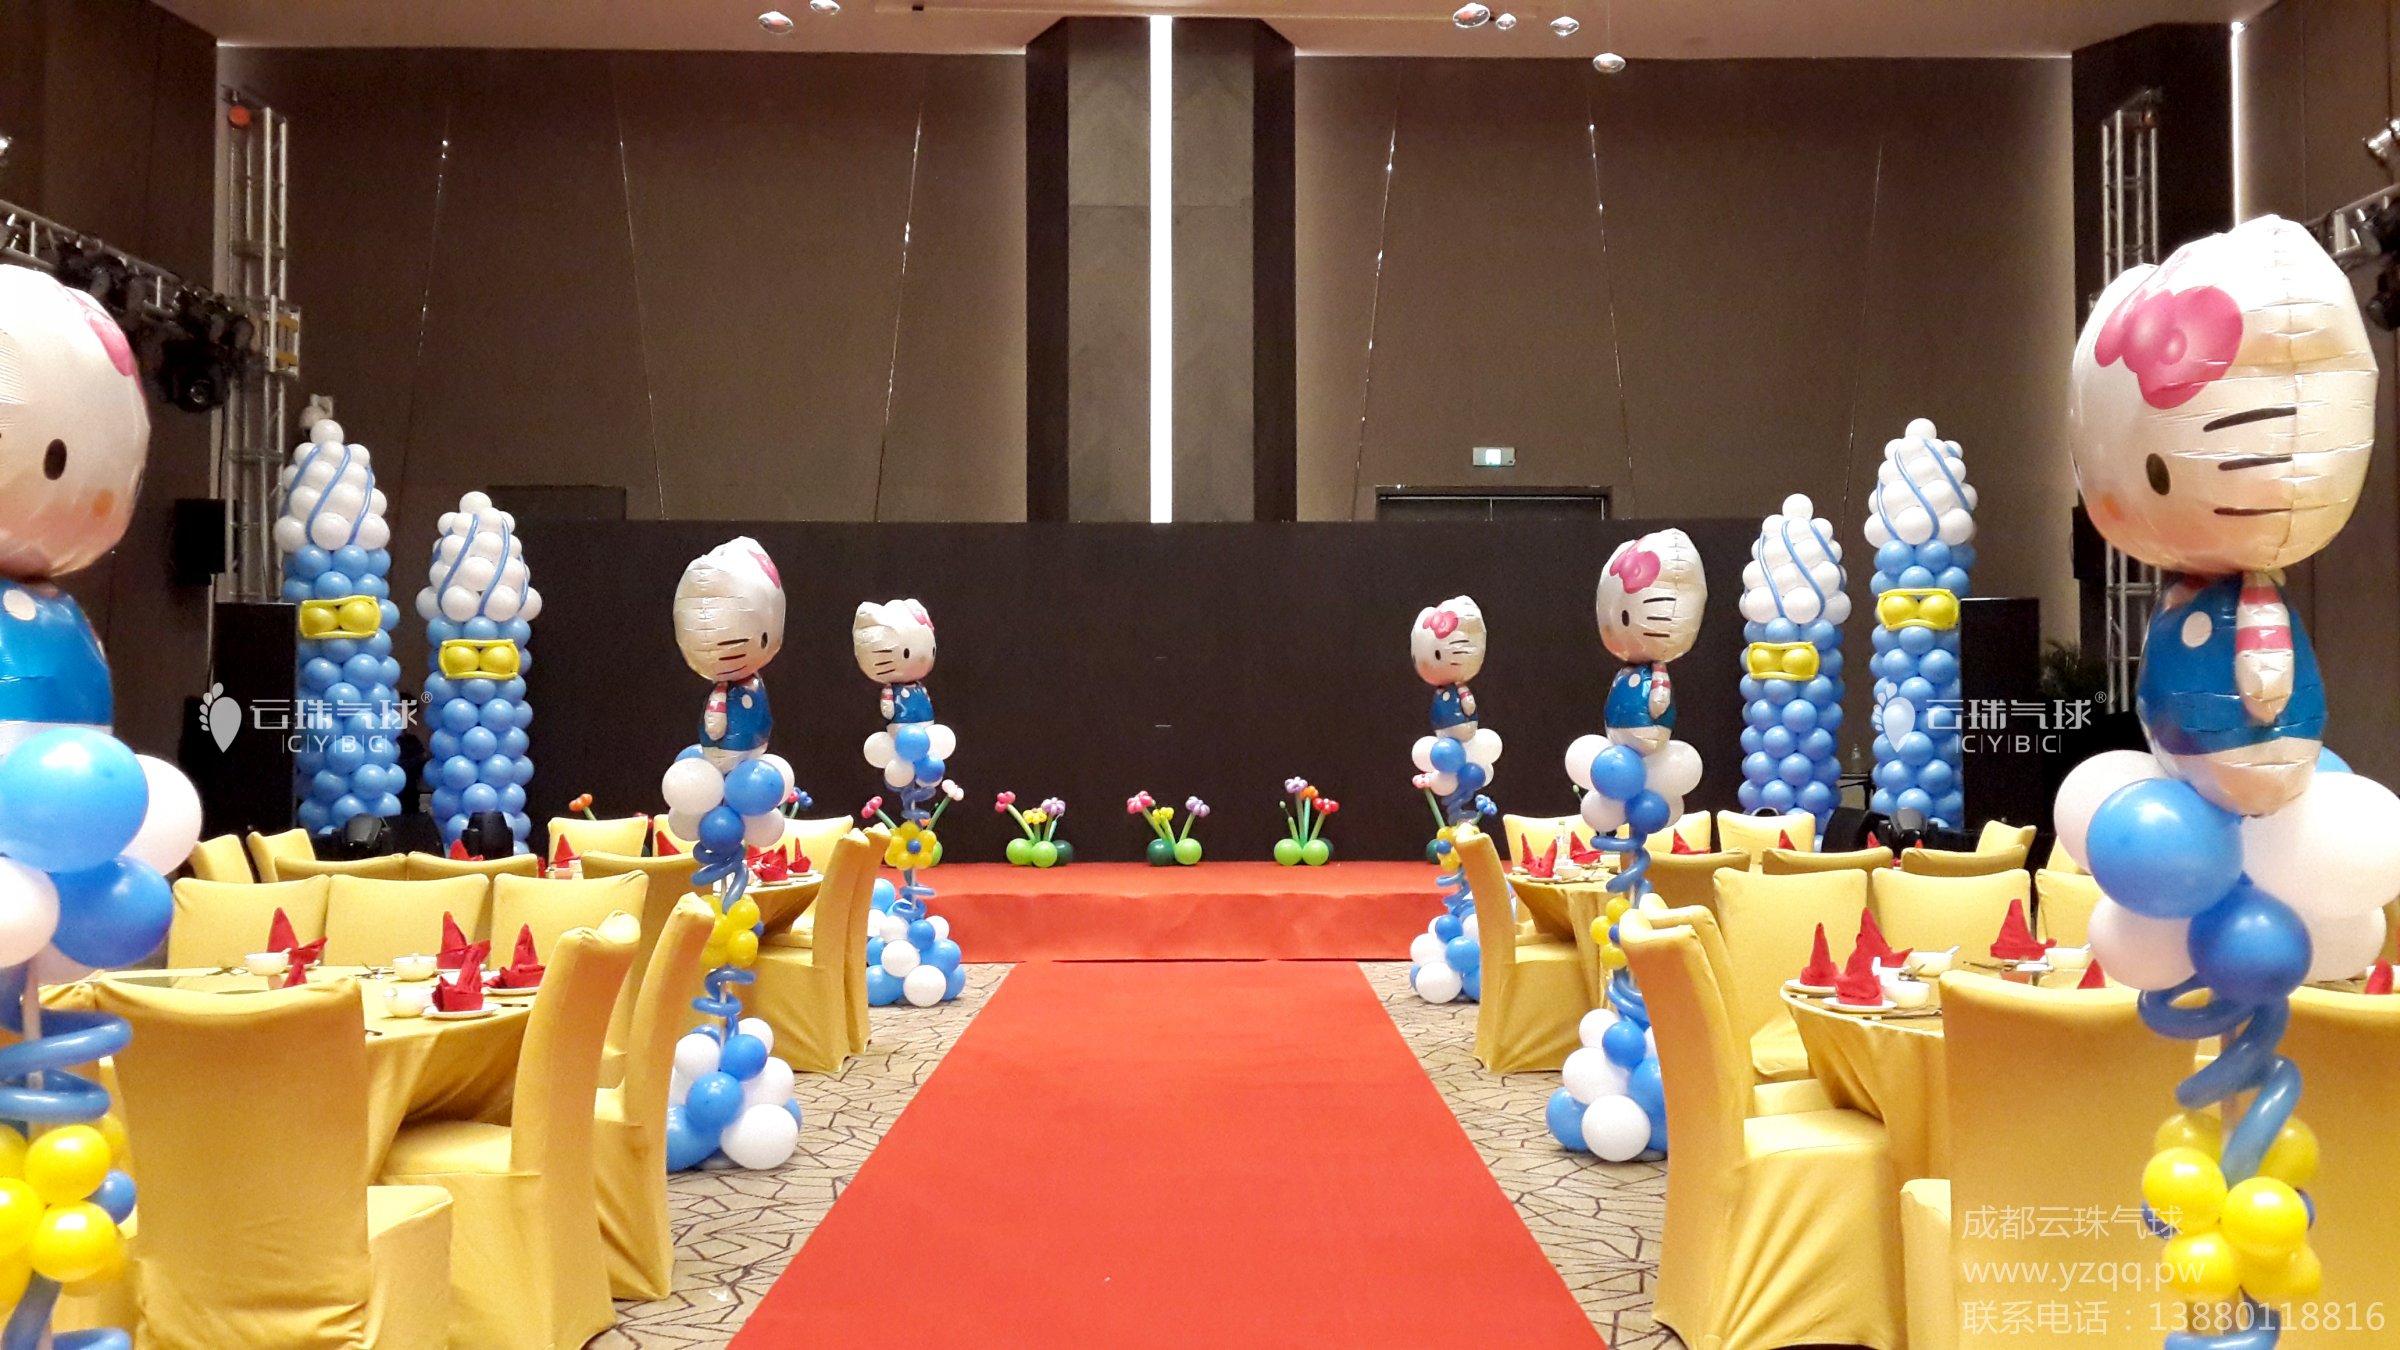 气球立柱供应气球路引/卡通气球立柱/气球造型/宝宝宴气球装饰/成都气球造型装饰